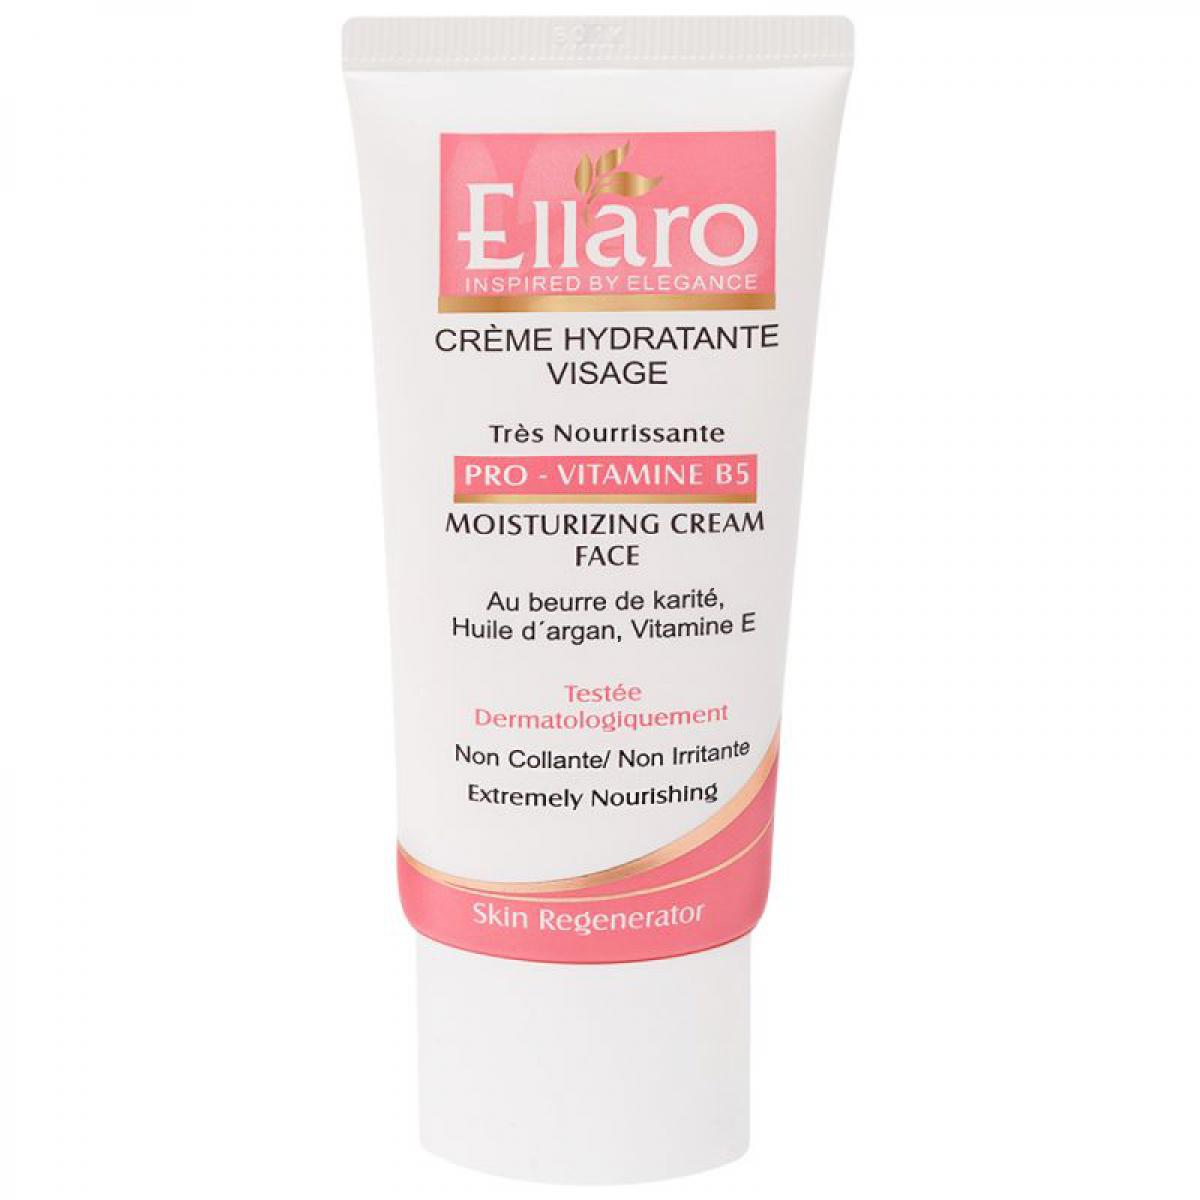 کرم مرطوب کننده مغذی حاوی پرو ویتامین B5 حجم 50 میل - Ellaro Face Moisturizing Cream 50 ml 